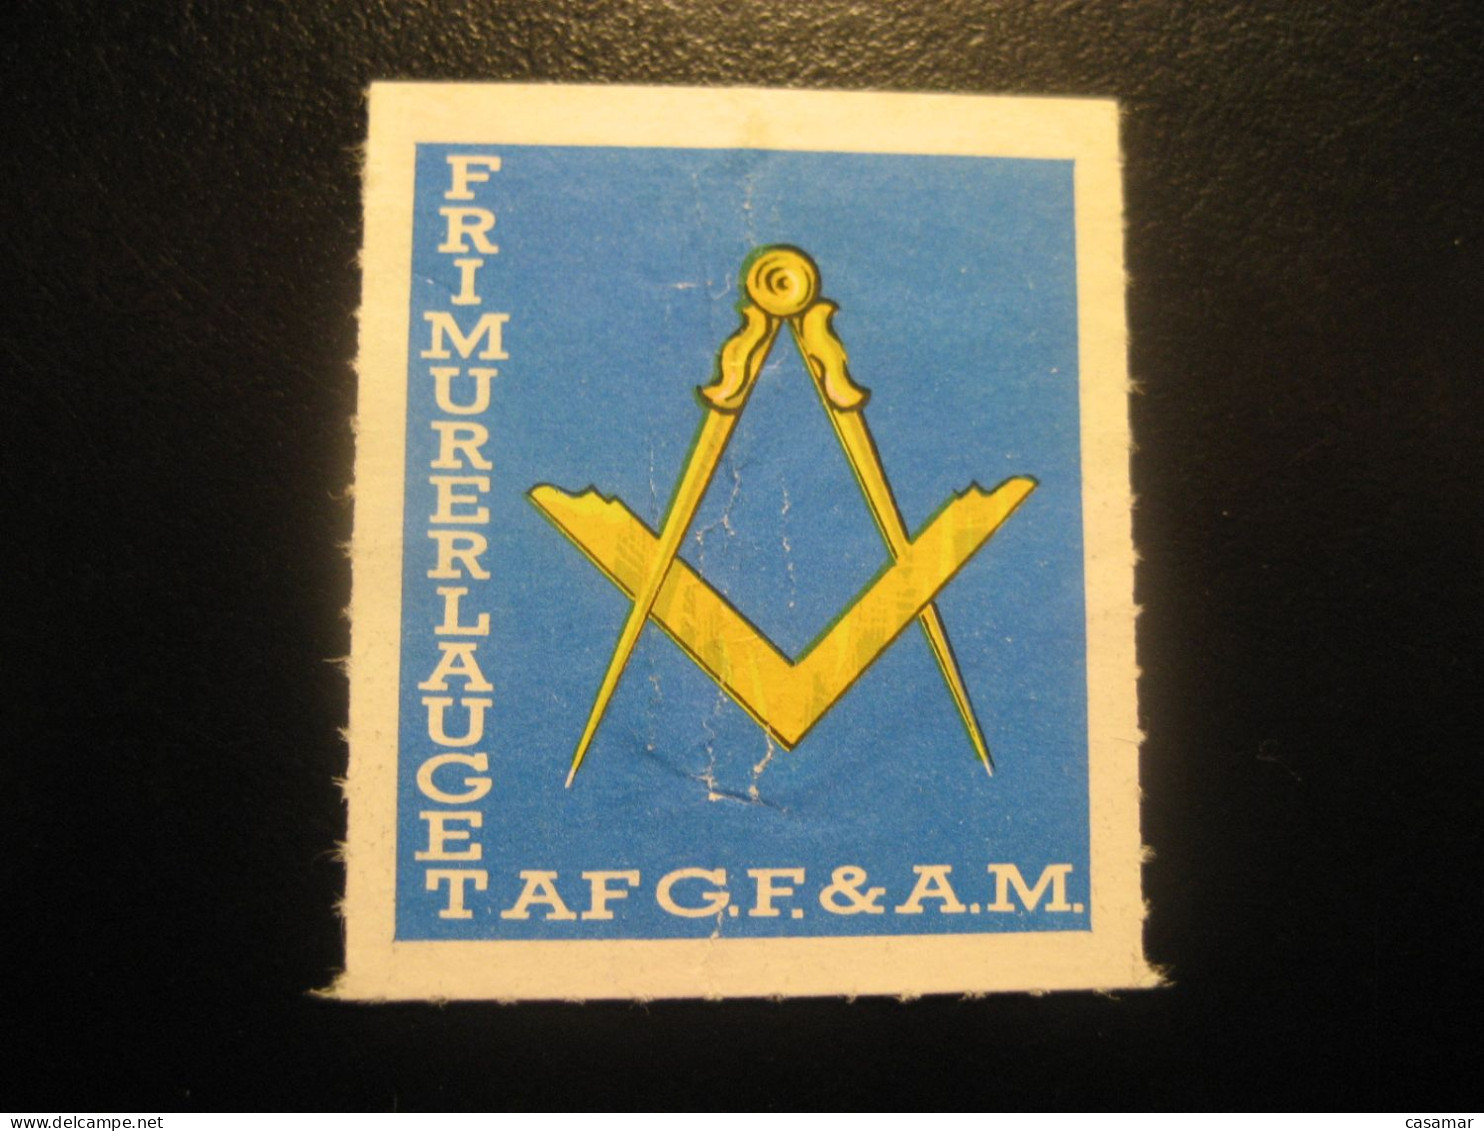 Frimurerlauget AF G.F. & A.M. Freemasonry Masonry Masonic Lodge Perces Zig Zag Poster Stamp Vignette DENMARK Label - Freemasonry